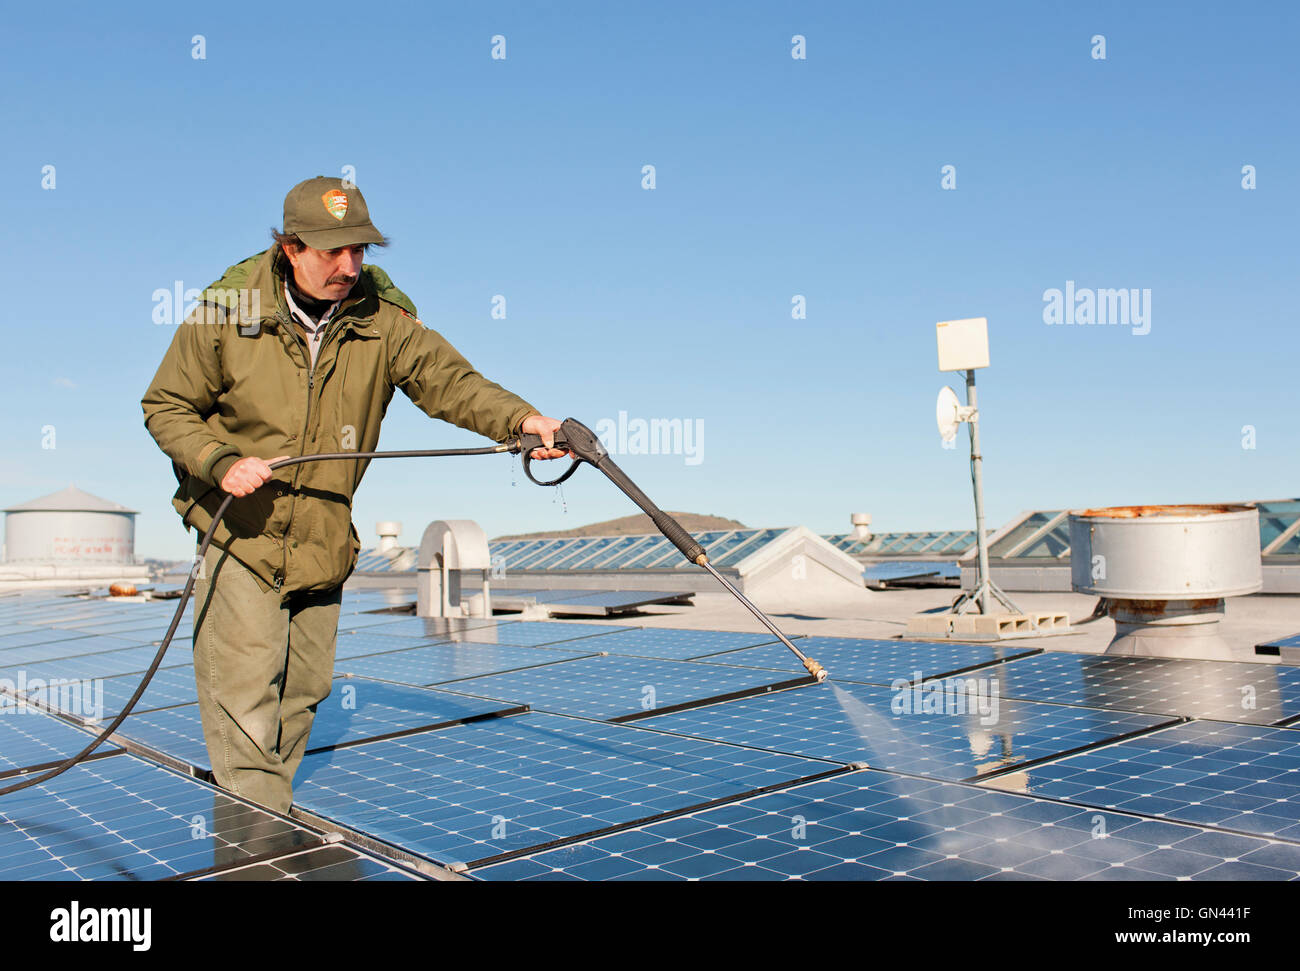 Un Katsane Ray National Park Service alimentation employé lave les panneaux solaires à l'île d'Alcatraz. L'accueil de longue date d'Al Capone Banque D'Images